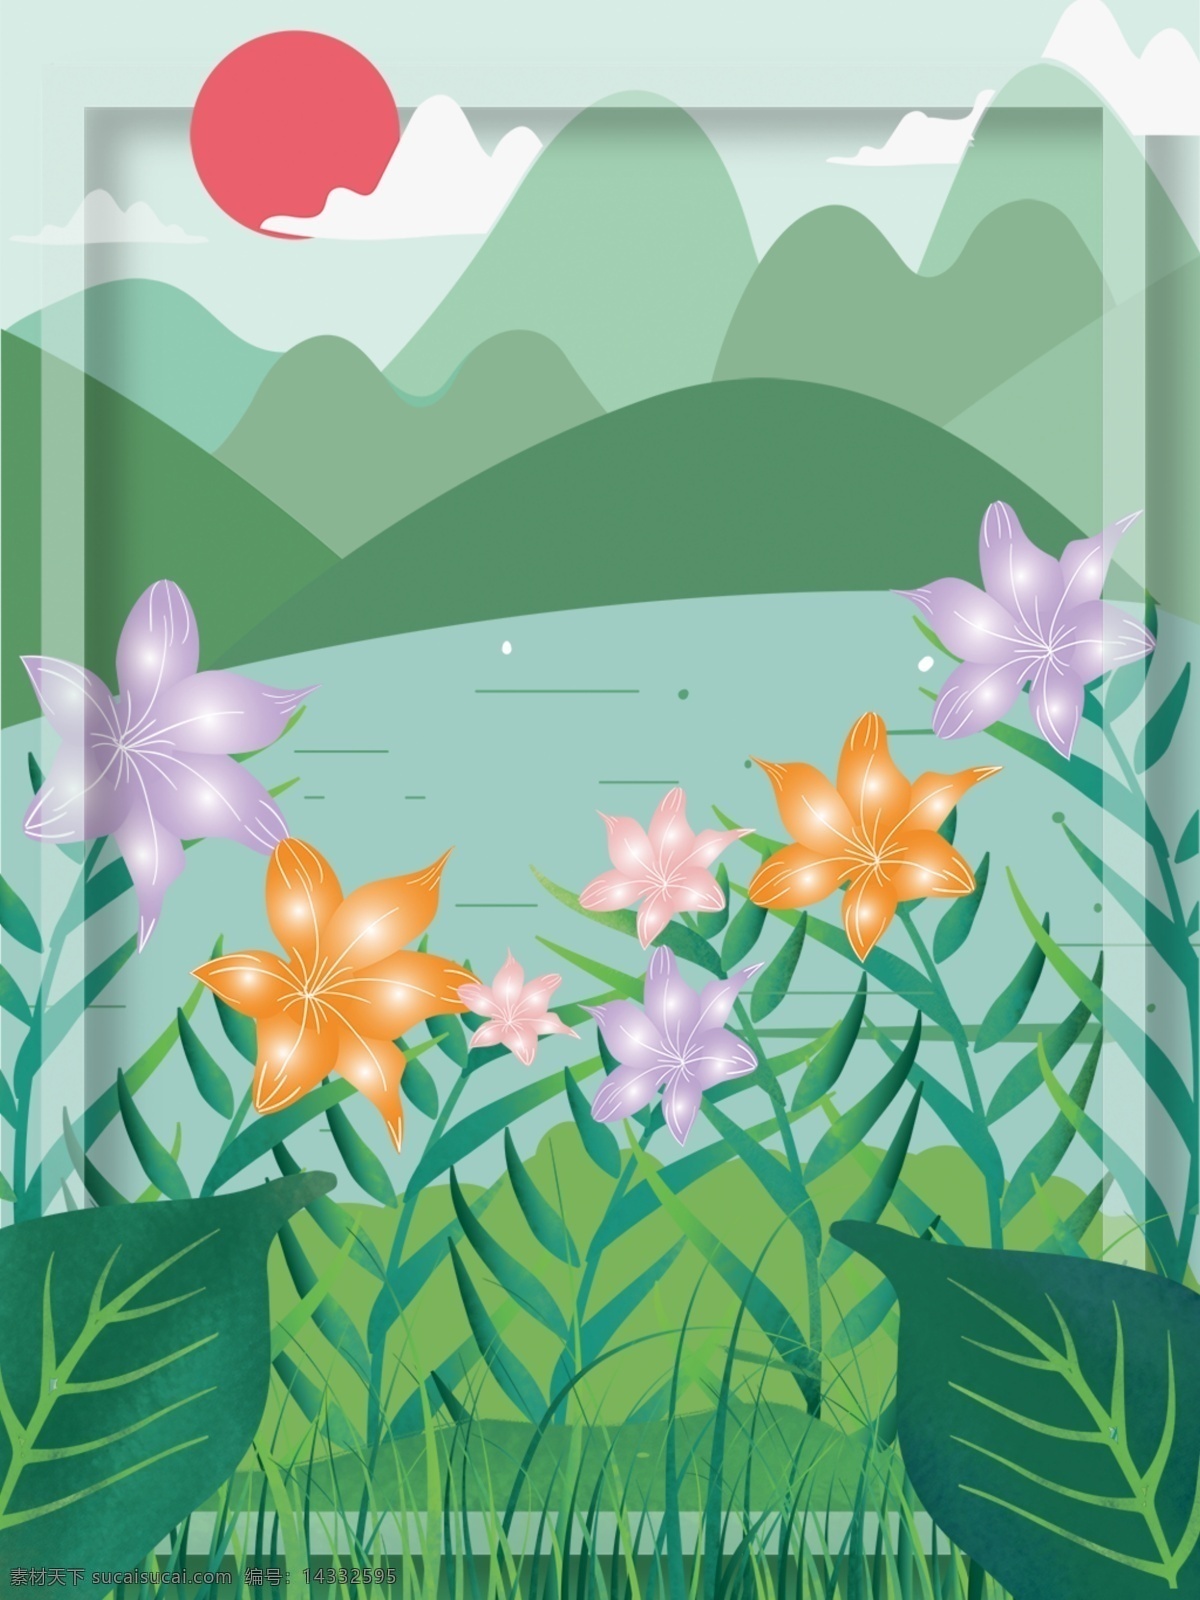 二十四节气 立夏 植物 风景 插图 背景 户外 花朵 山脉 叶片 太阳 风景插图 广告背景 促销背景 绿色 可爱 卡通